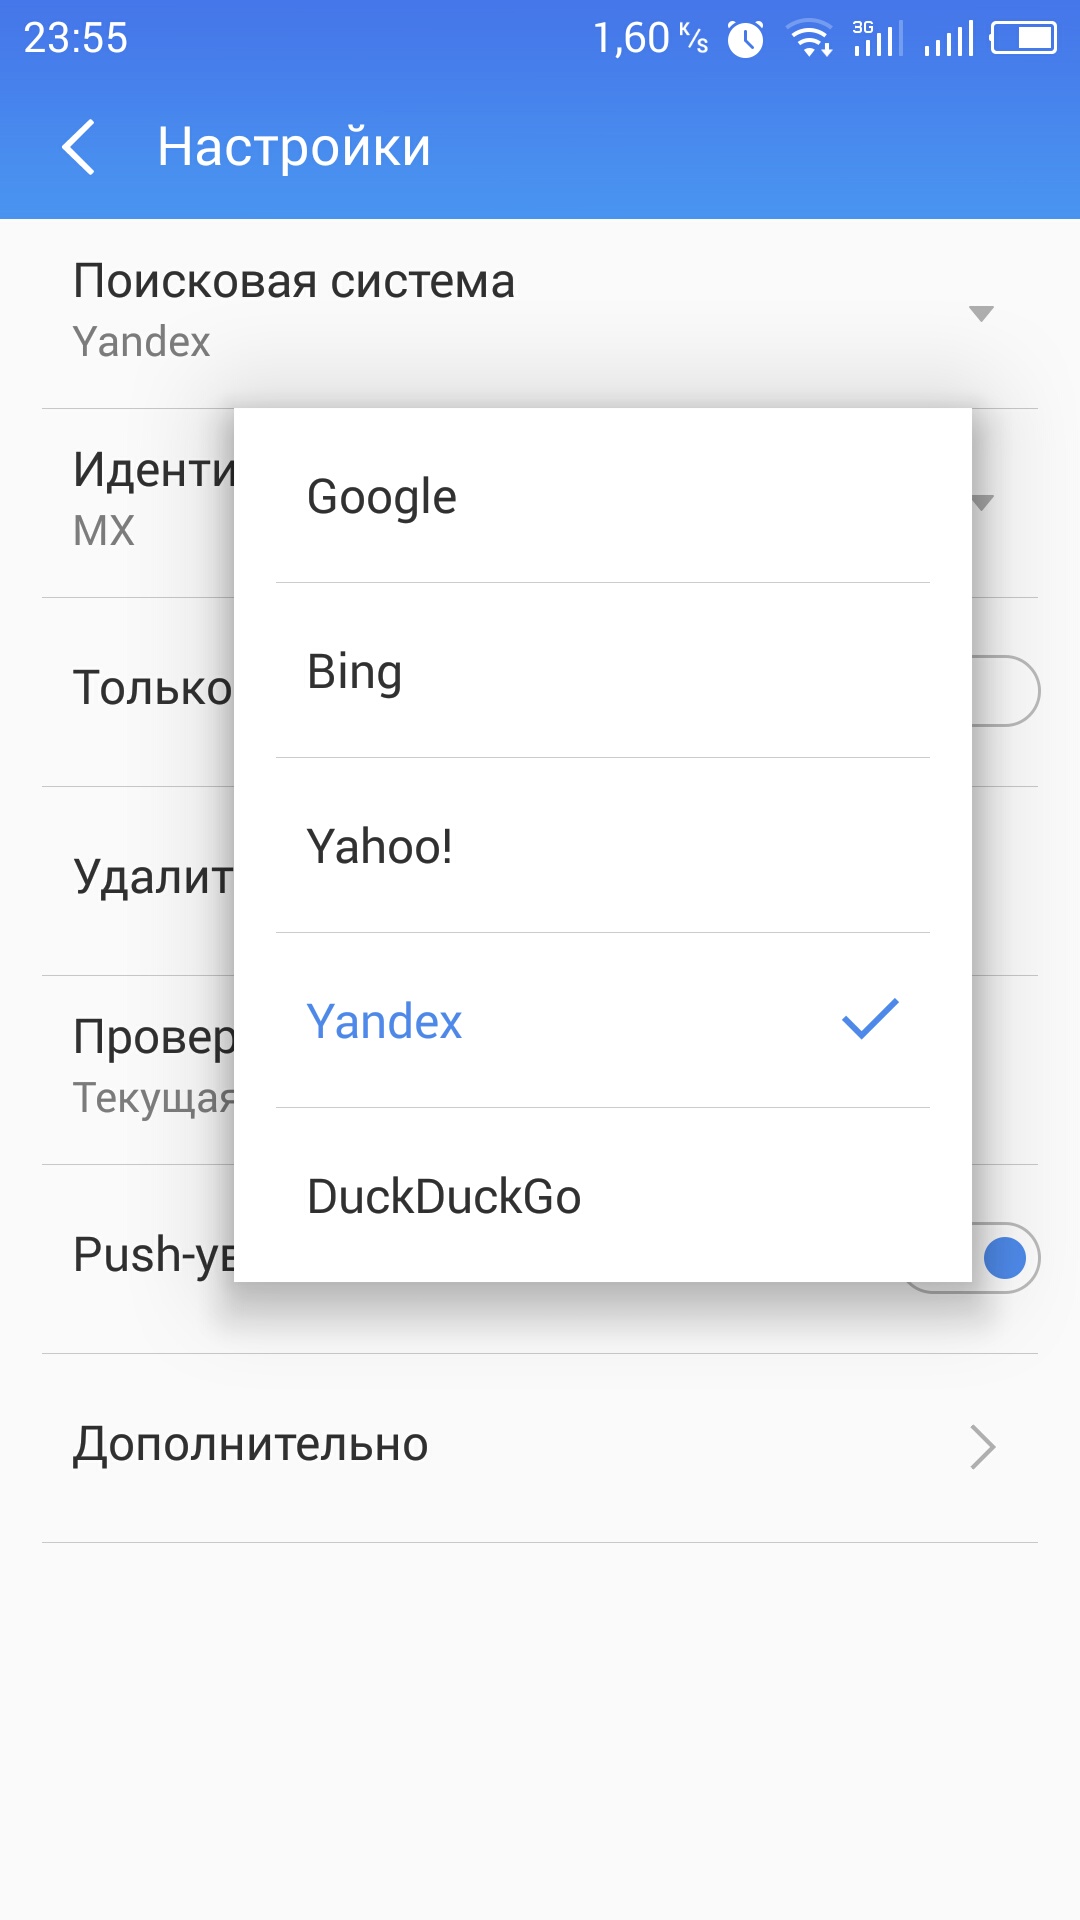 Настройки телефона через гугл. Настройки Яндекса на телефоне. Как настроить поисковую систему гугл. Настройки телефона или настройки Яндекса.